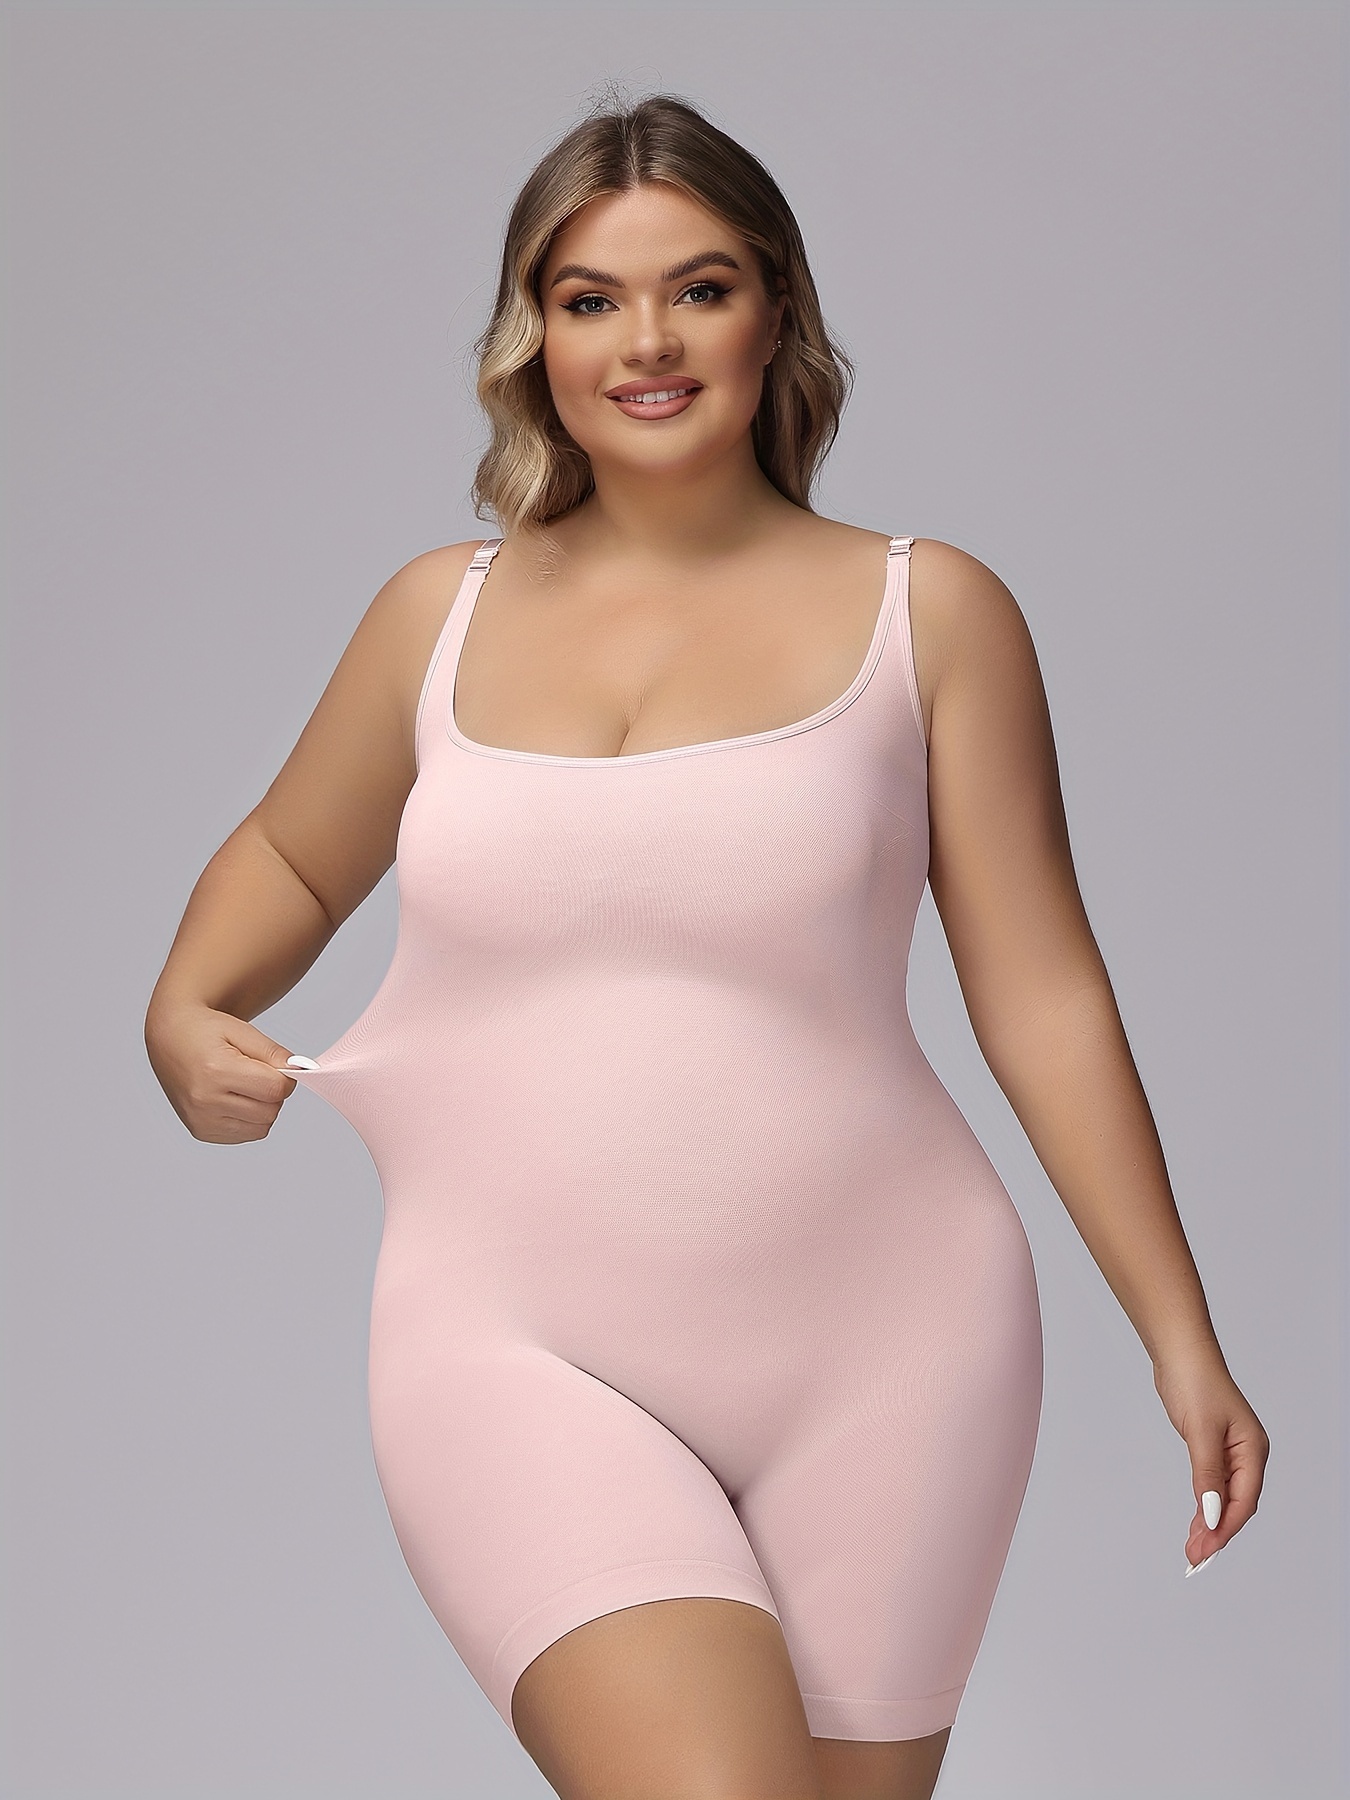 Plus Size Women Full Body Shaper for Women Tummy Control Butt Lift  Shapewear Bodysuit